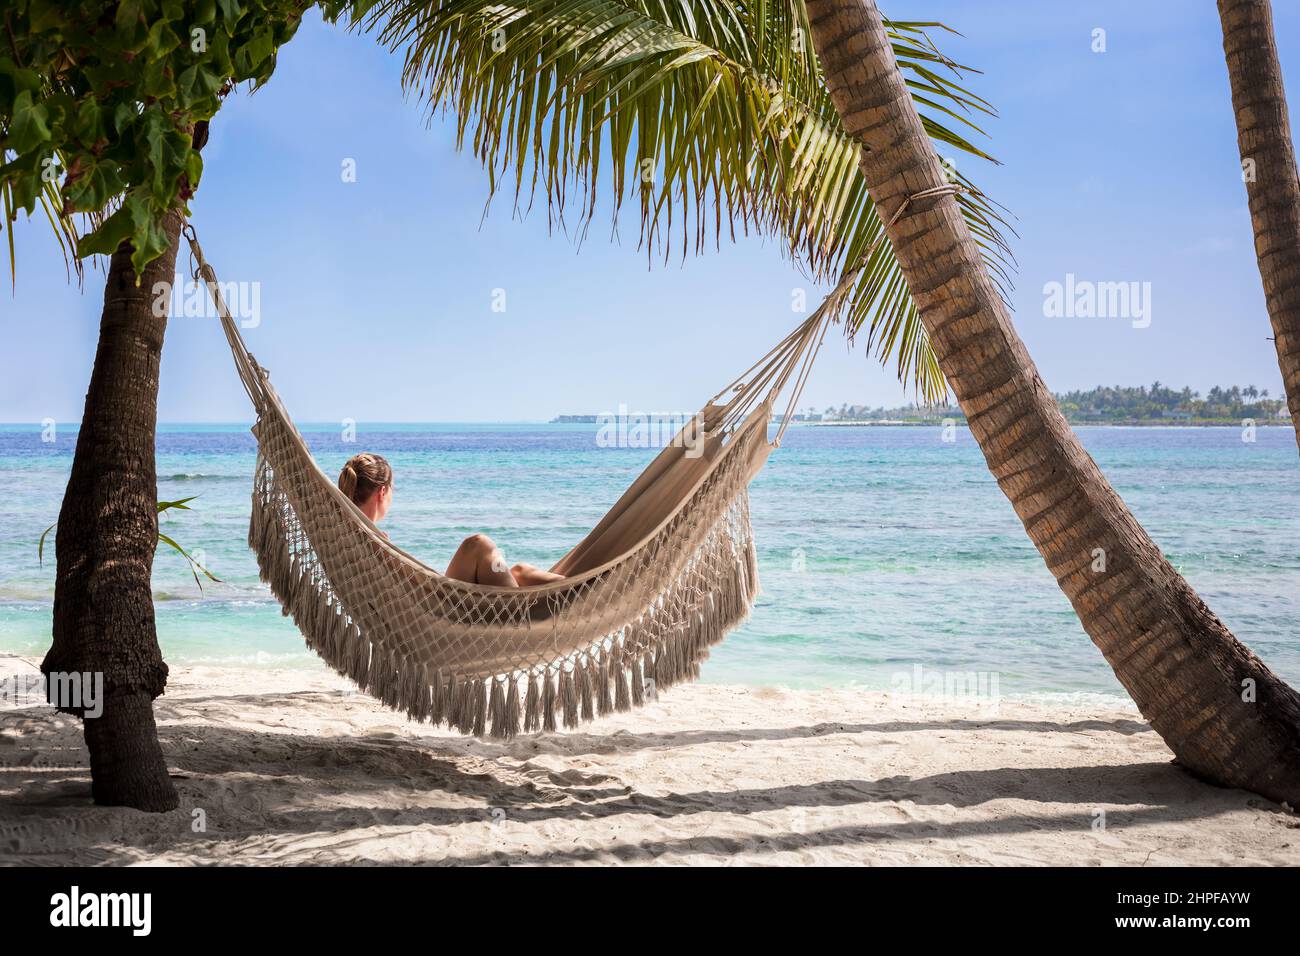 Vacaciones en la playa con una mujer relajándose en una hamaca entre palmeras de coco, arena blanca, cielo azul y agua turquesa. Escénico complejo turístico en la isla de Ma Foto de stock